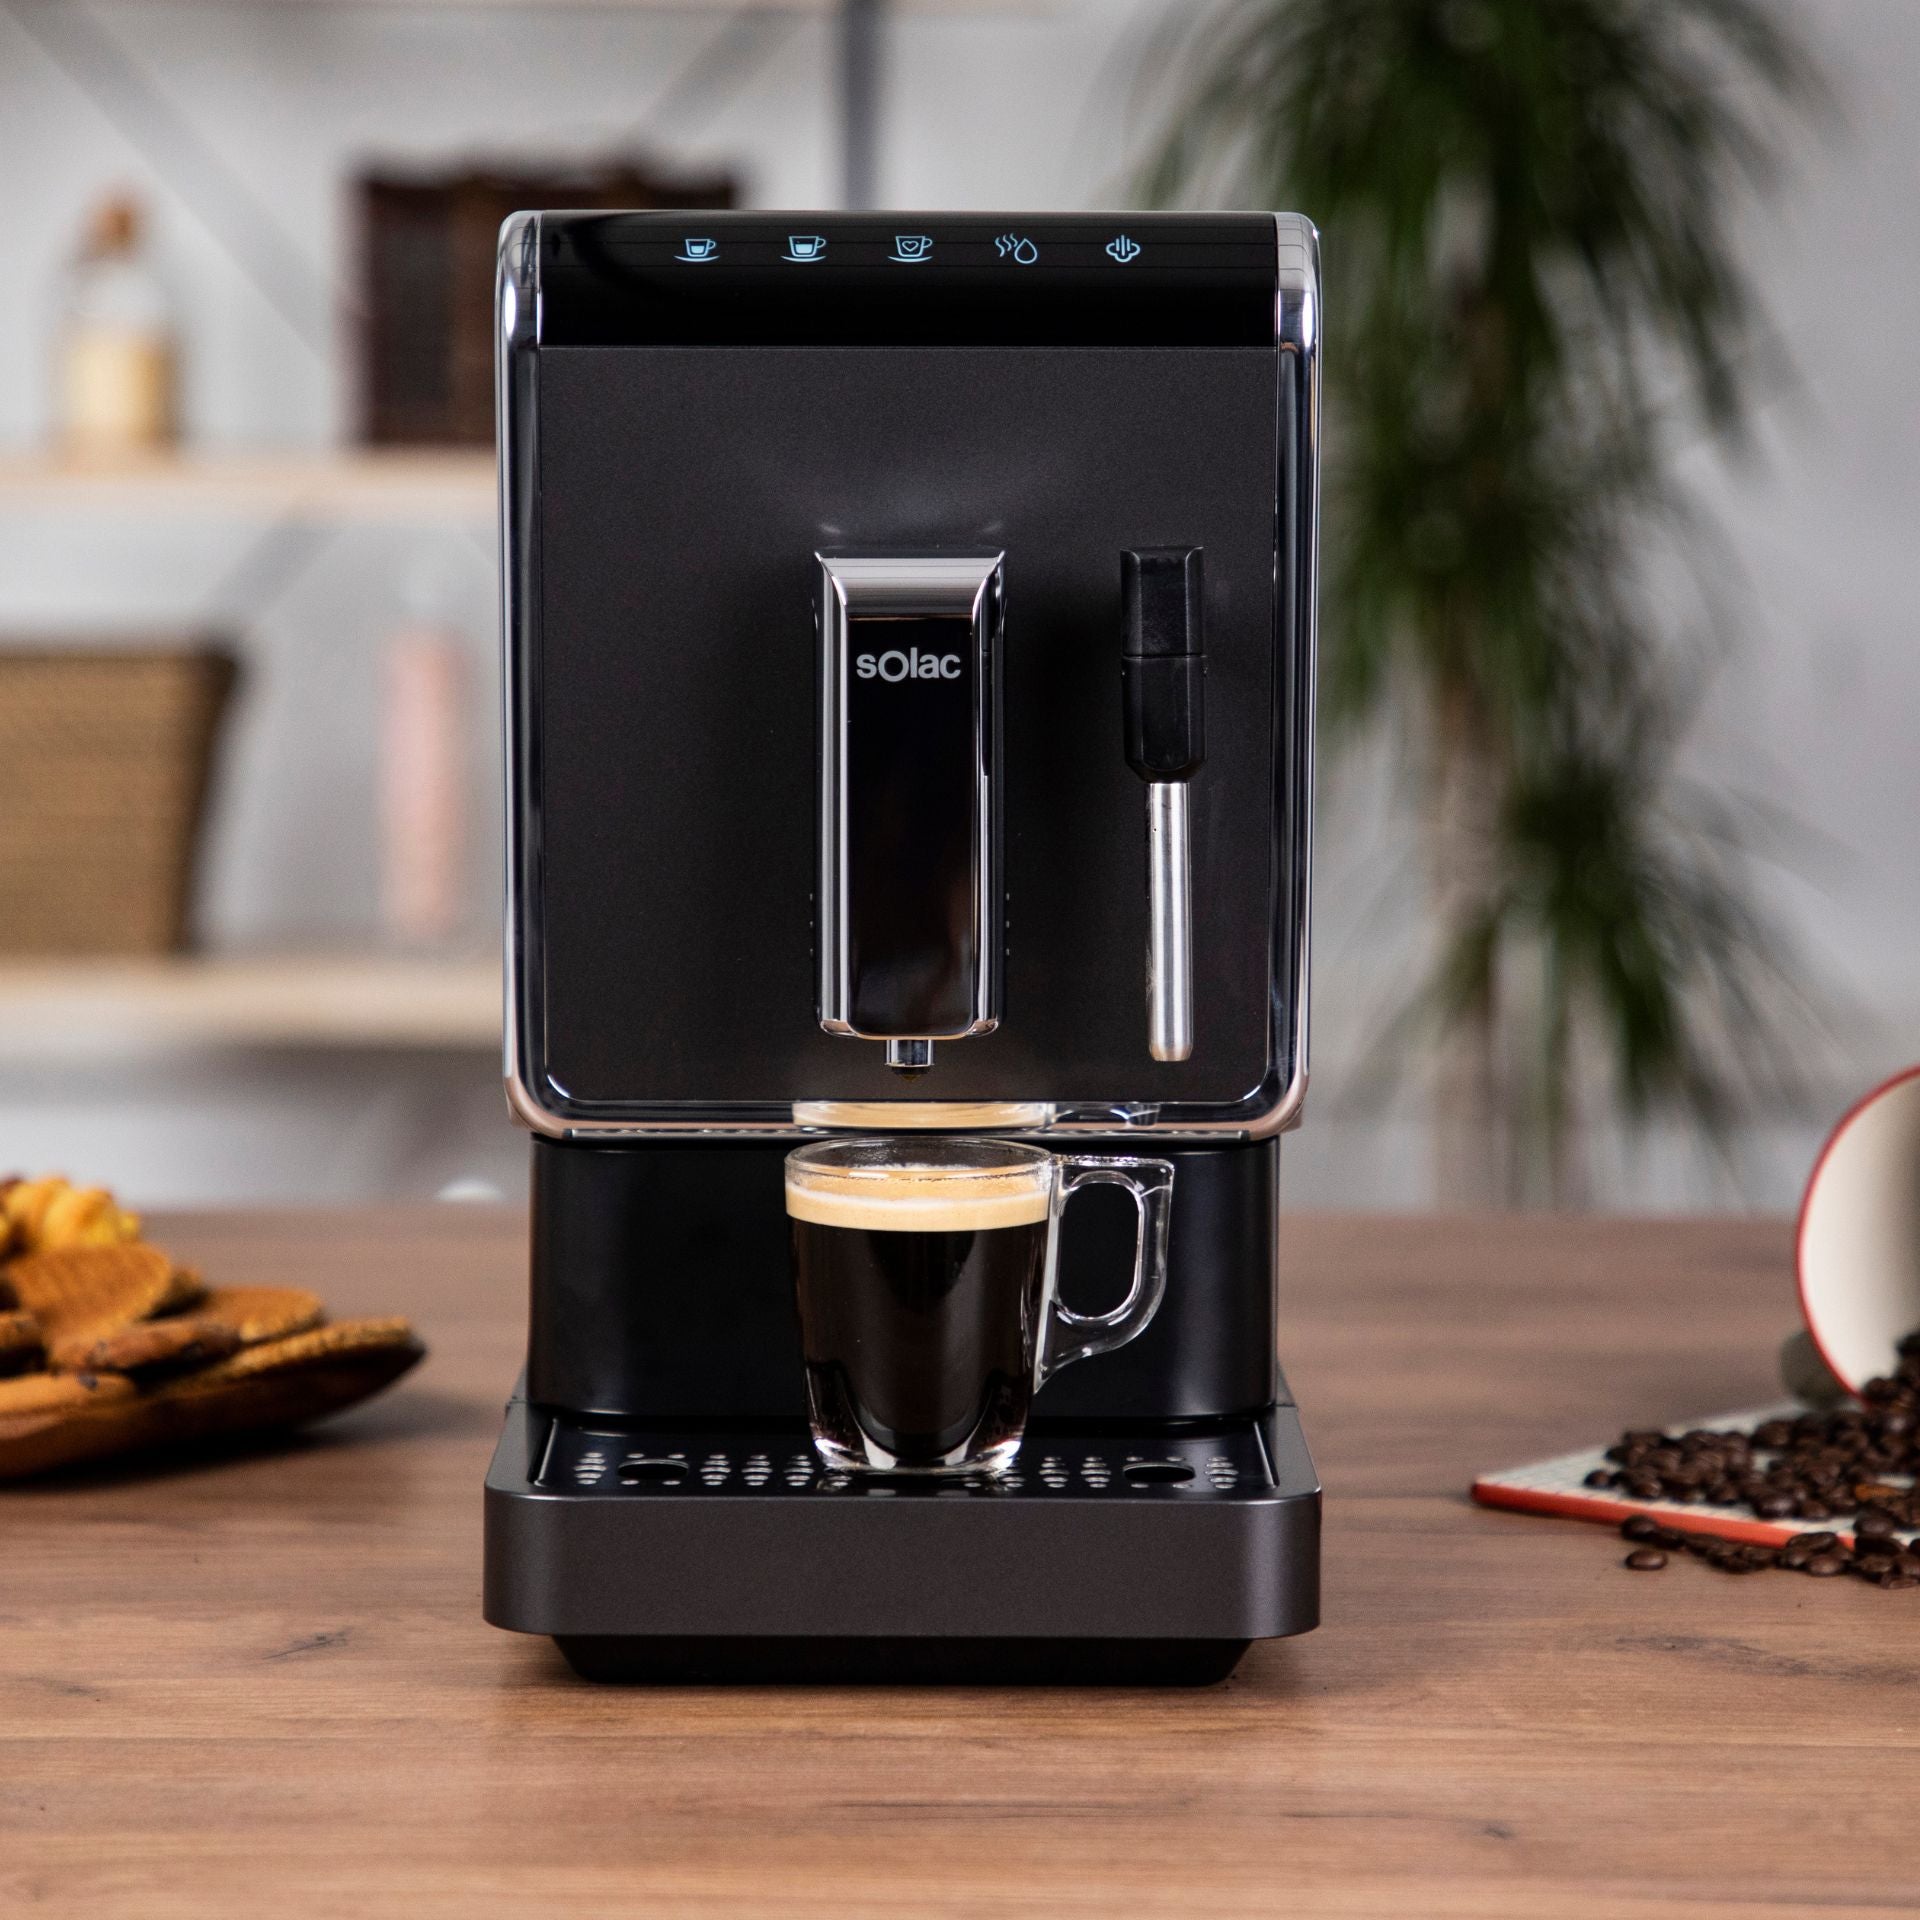 Seis cafeteras superautomáticas para preparar cafés deliciosos y